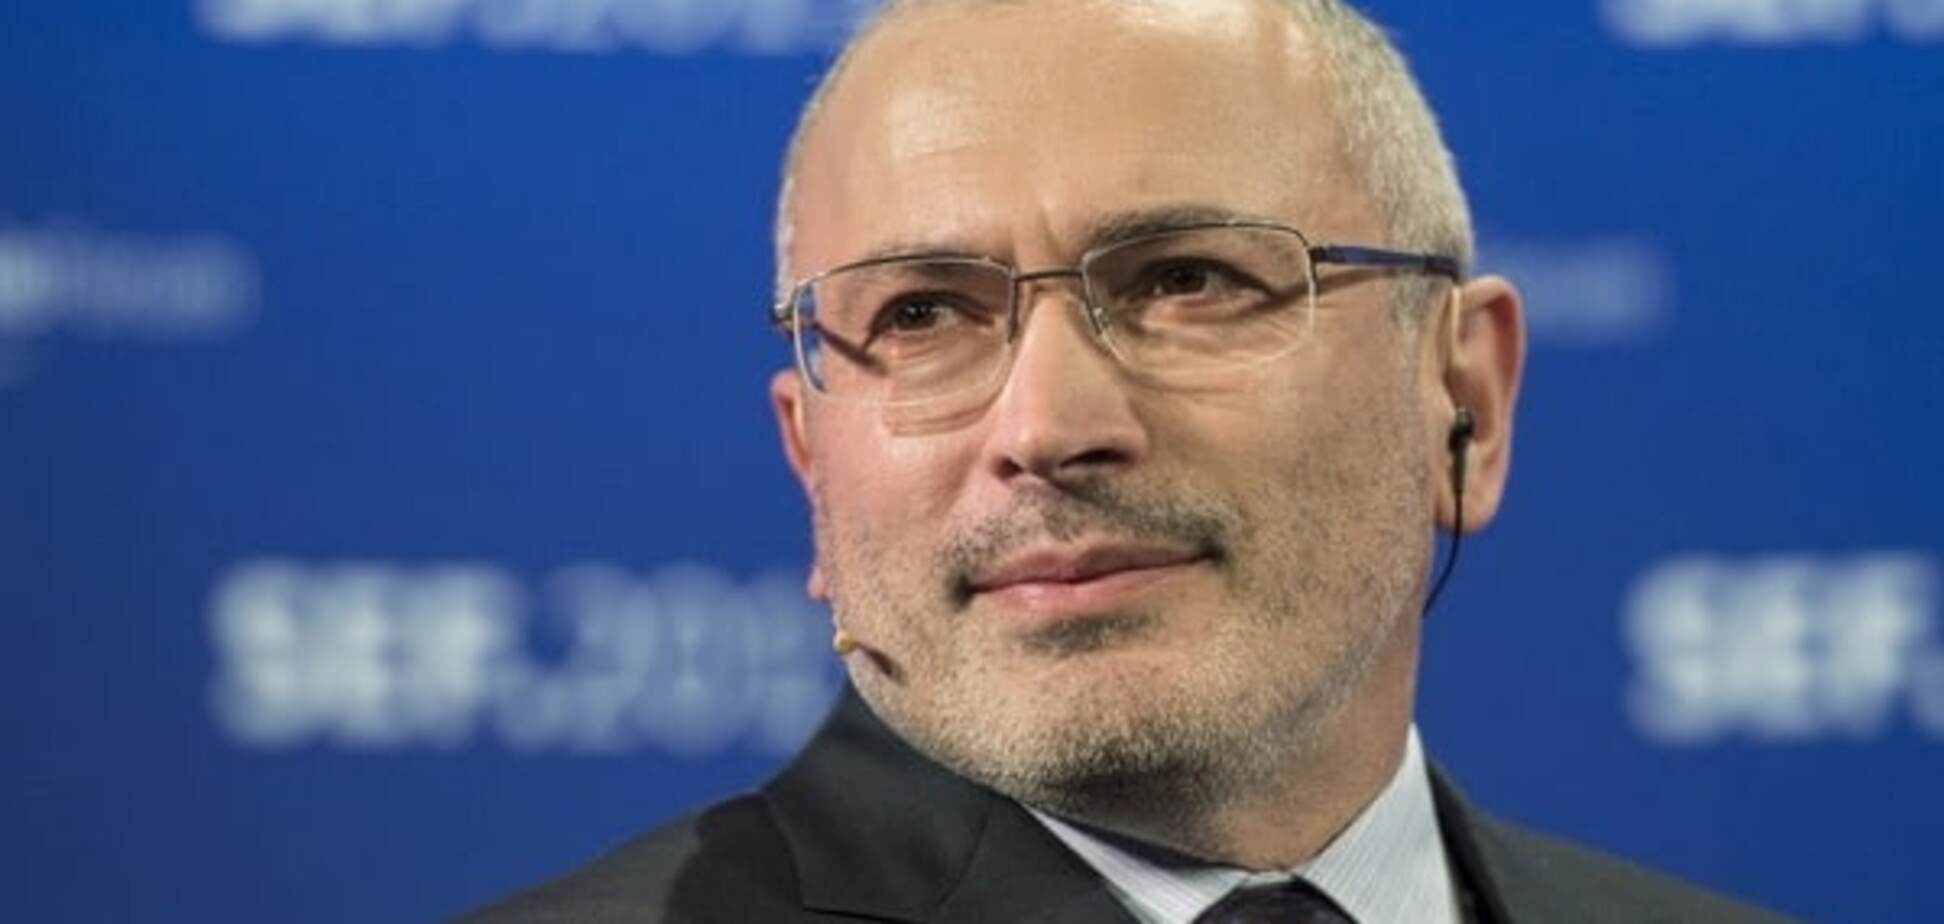 Росія оголосила Ходорковського у федеральний розшук - ЗМІ